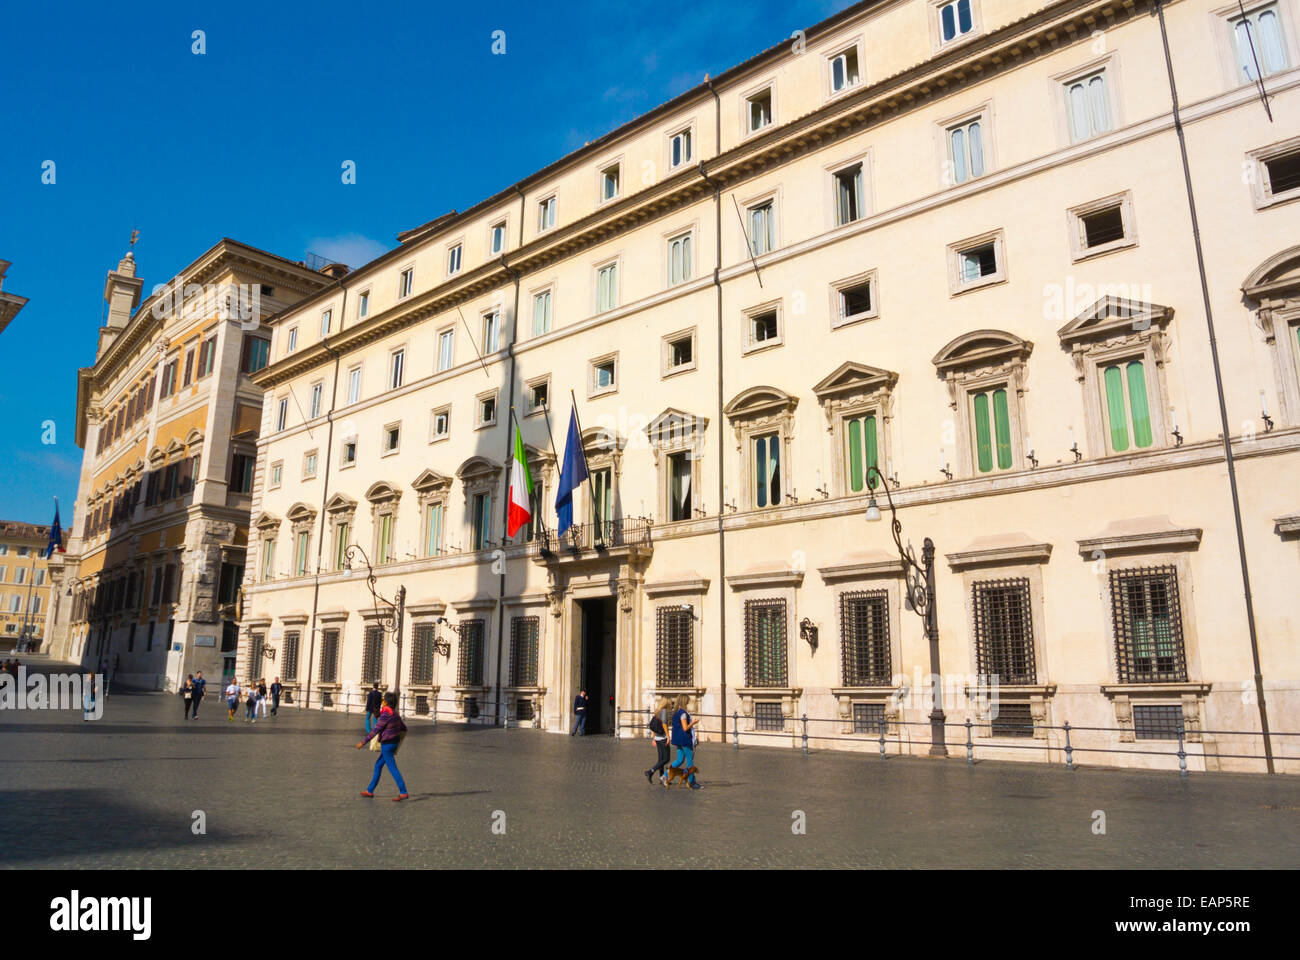 Palazzo Chigi,  Piazza Colonna, centro storico, old town, central Rome, Italy Stock Photo